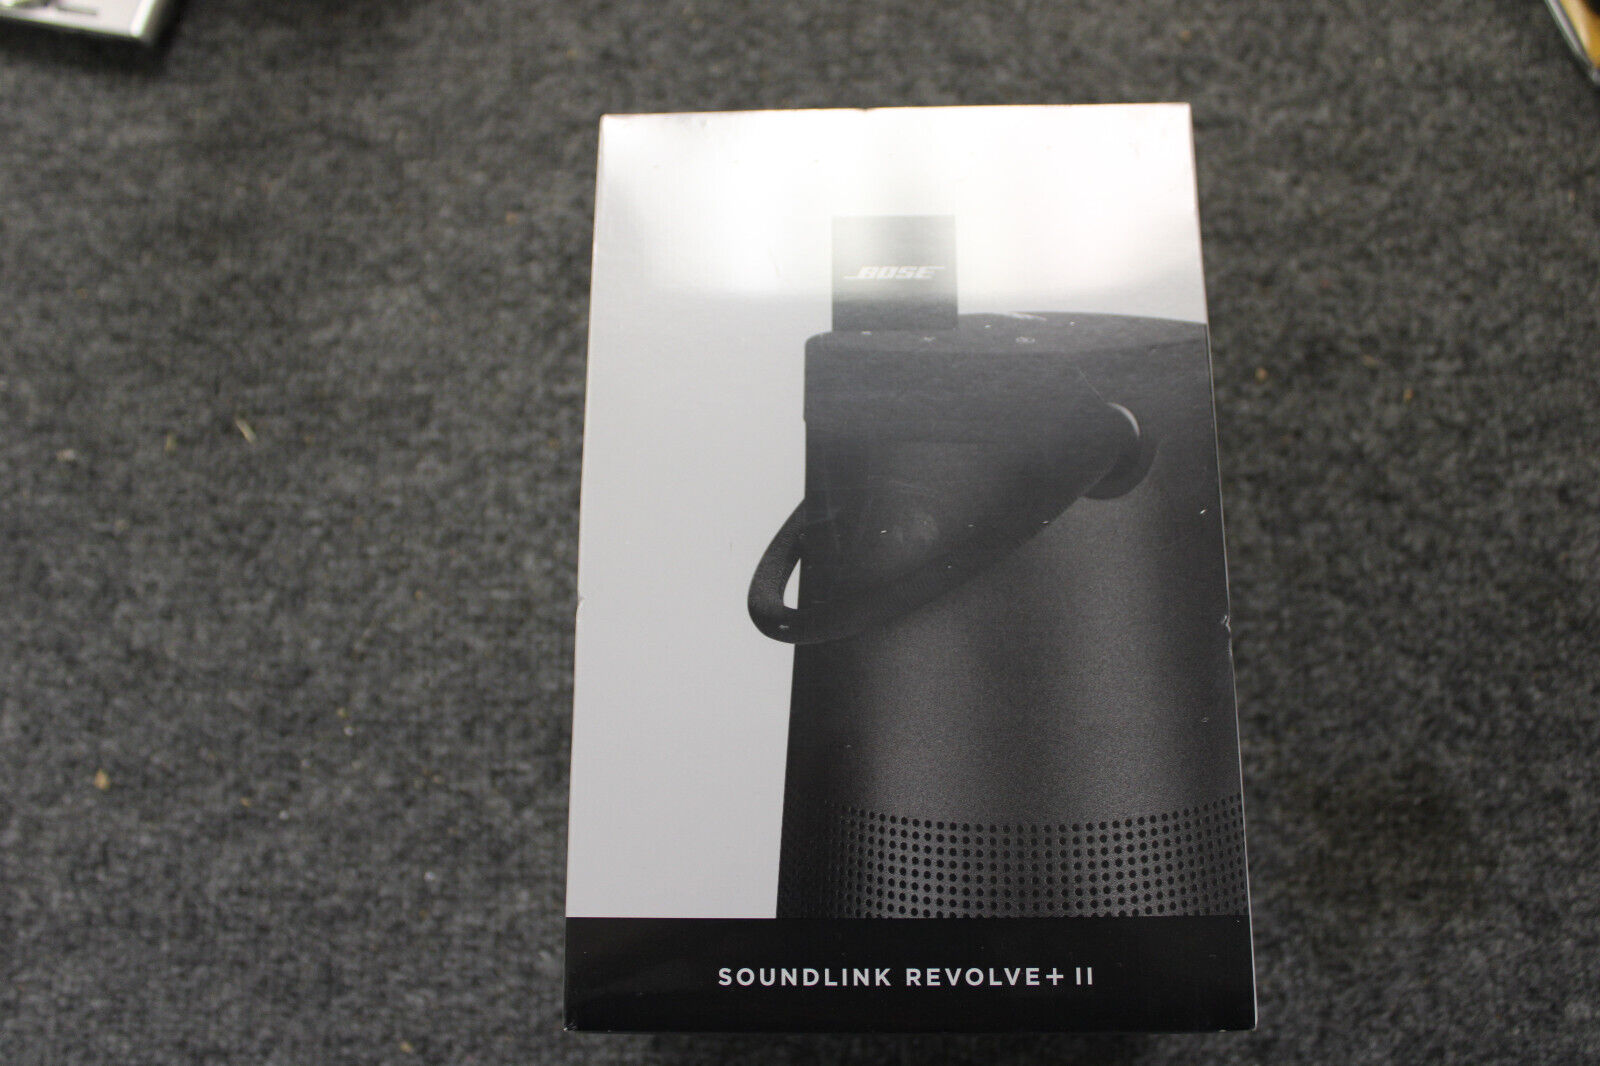 Bose SoundLink Revolve+ II Portable Bluetooth Speaker - Black for 